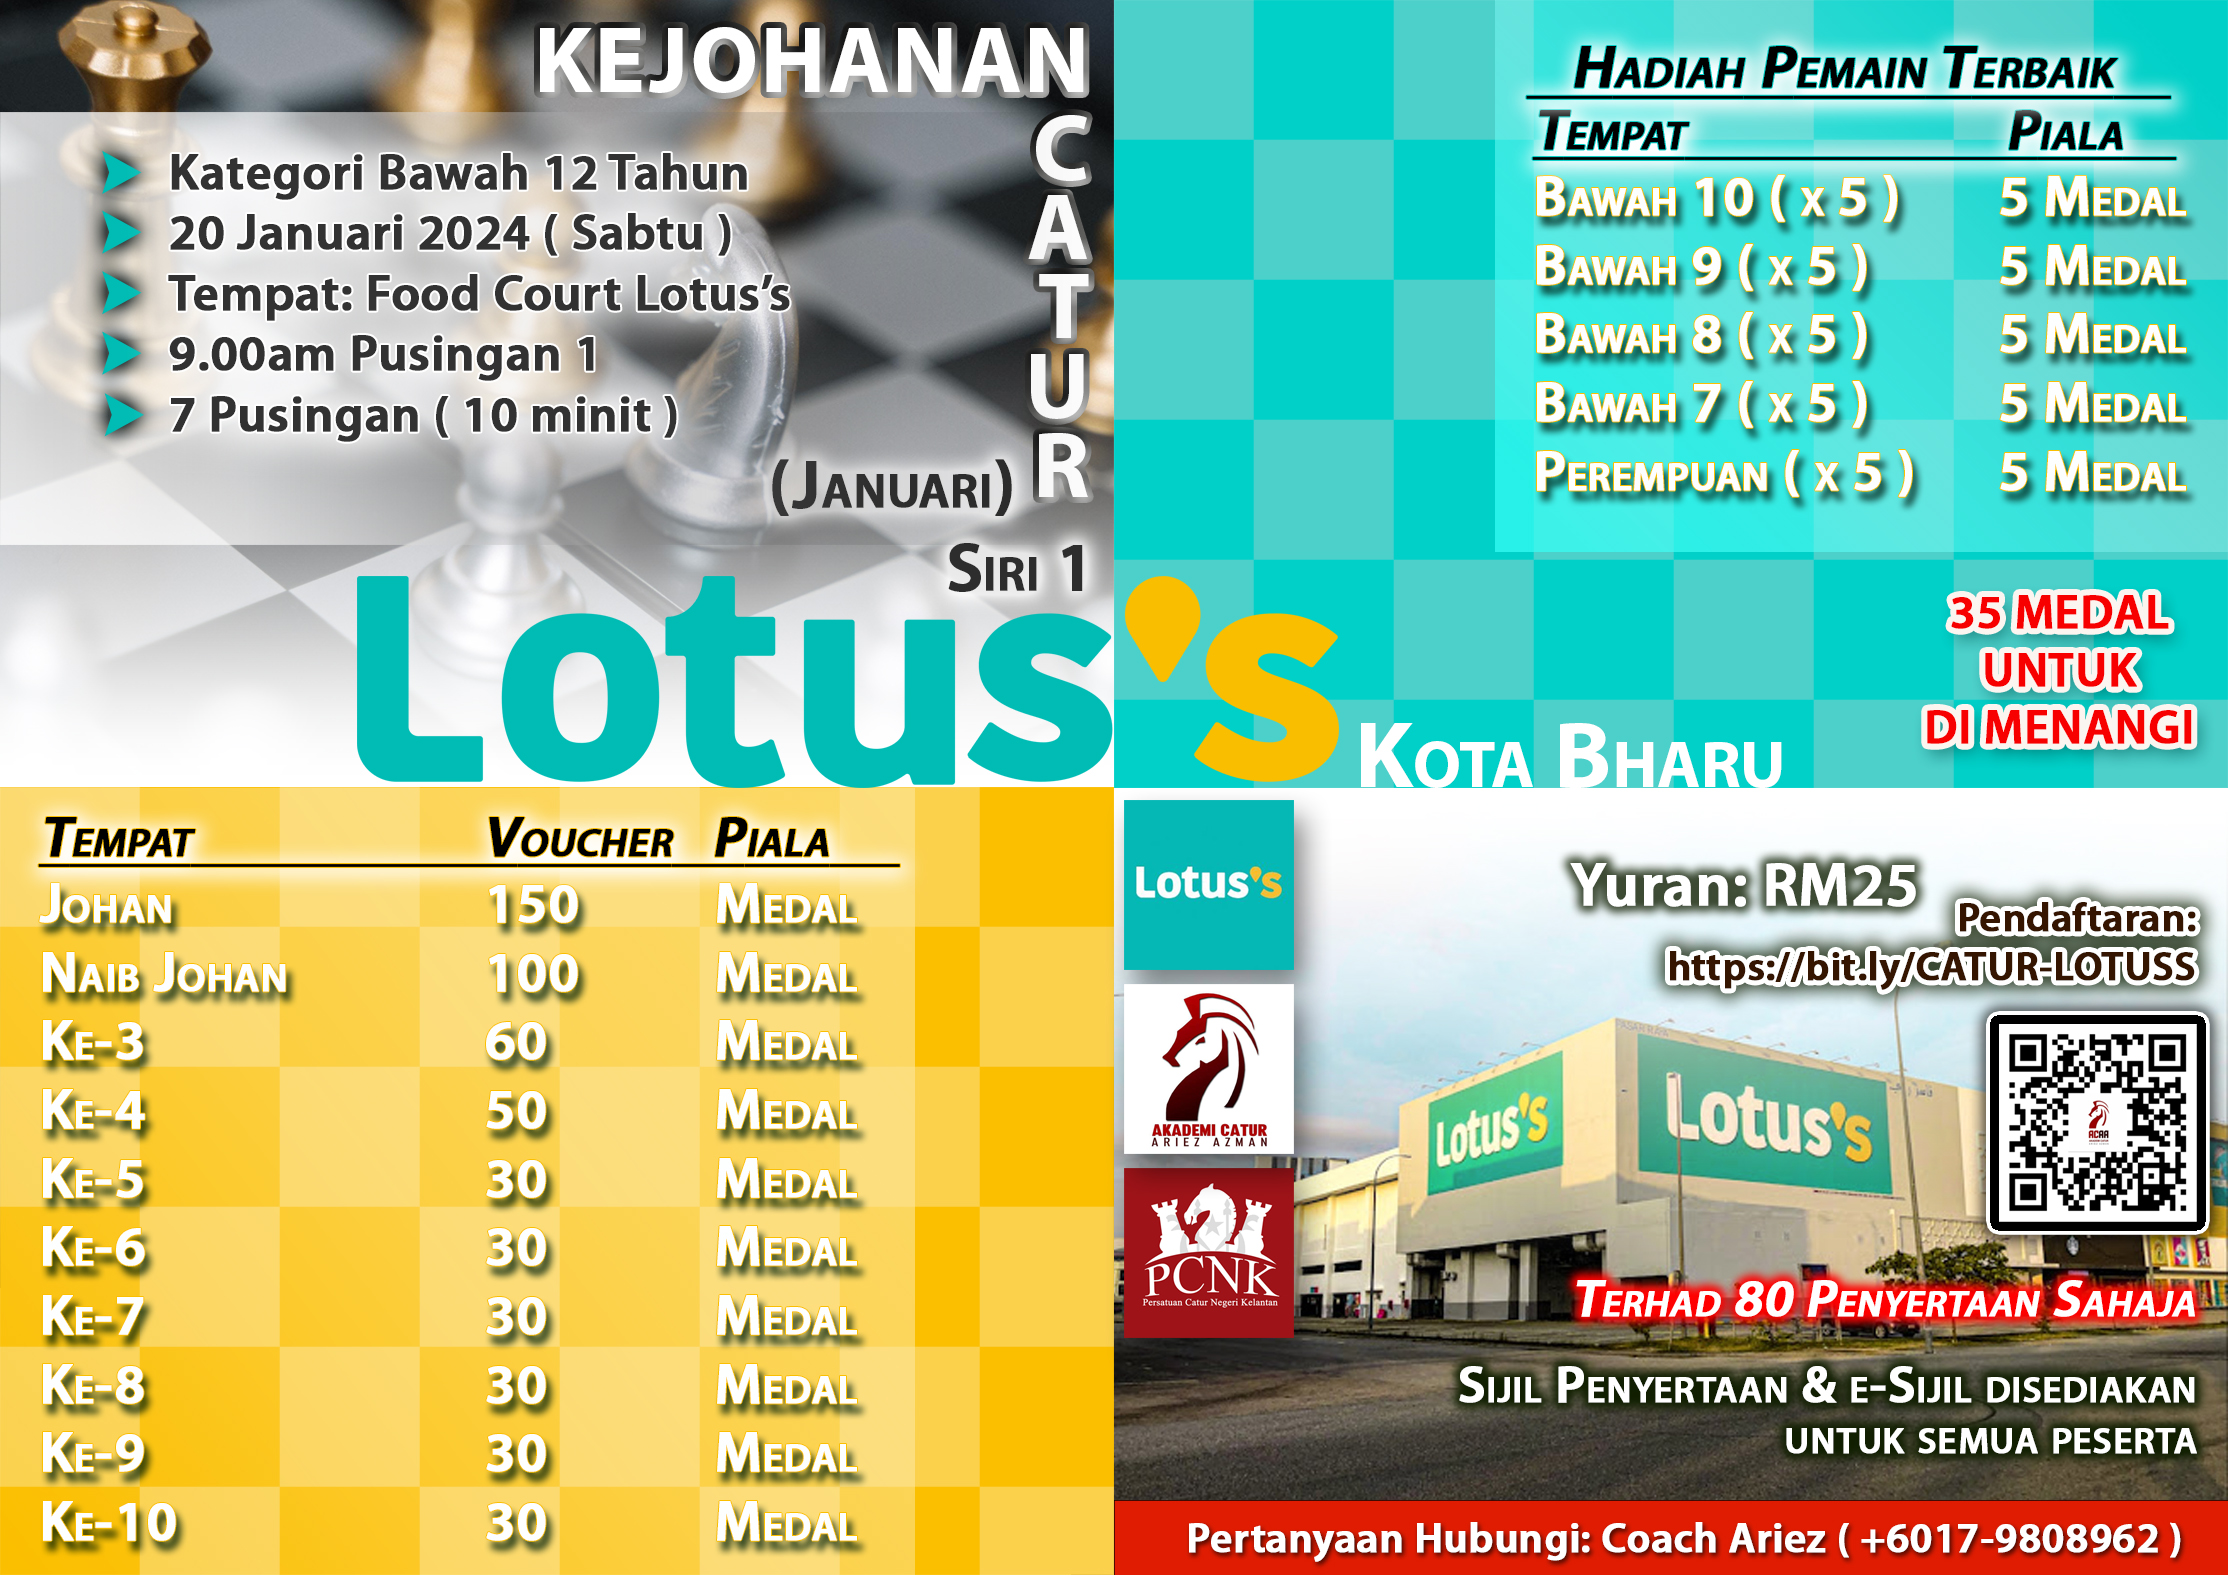 Kejohanan Catur Lotus&#8217;s Kota Bharu Siri 1 2024 (Januari)